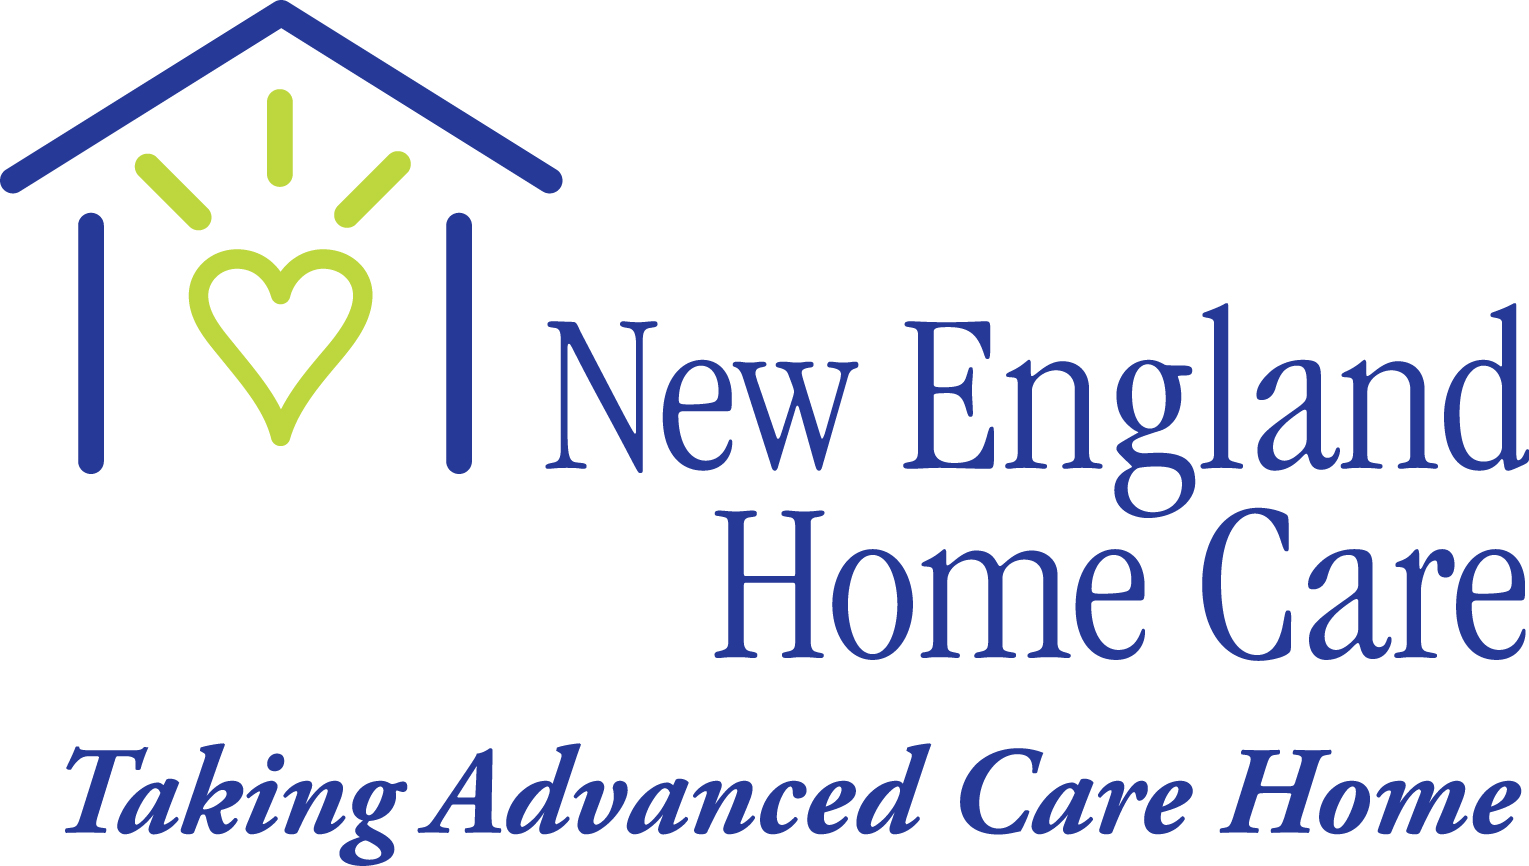 New England Home Care Company Logo